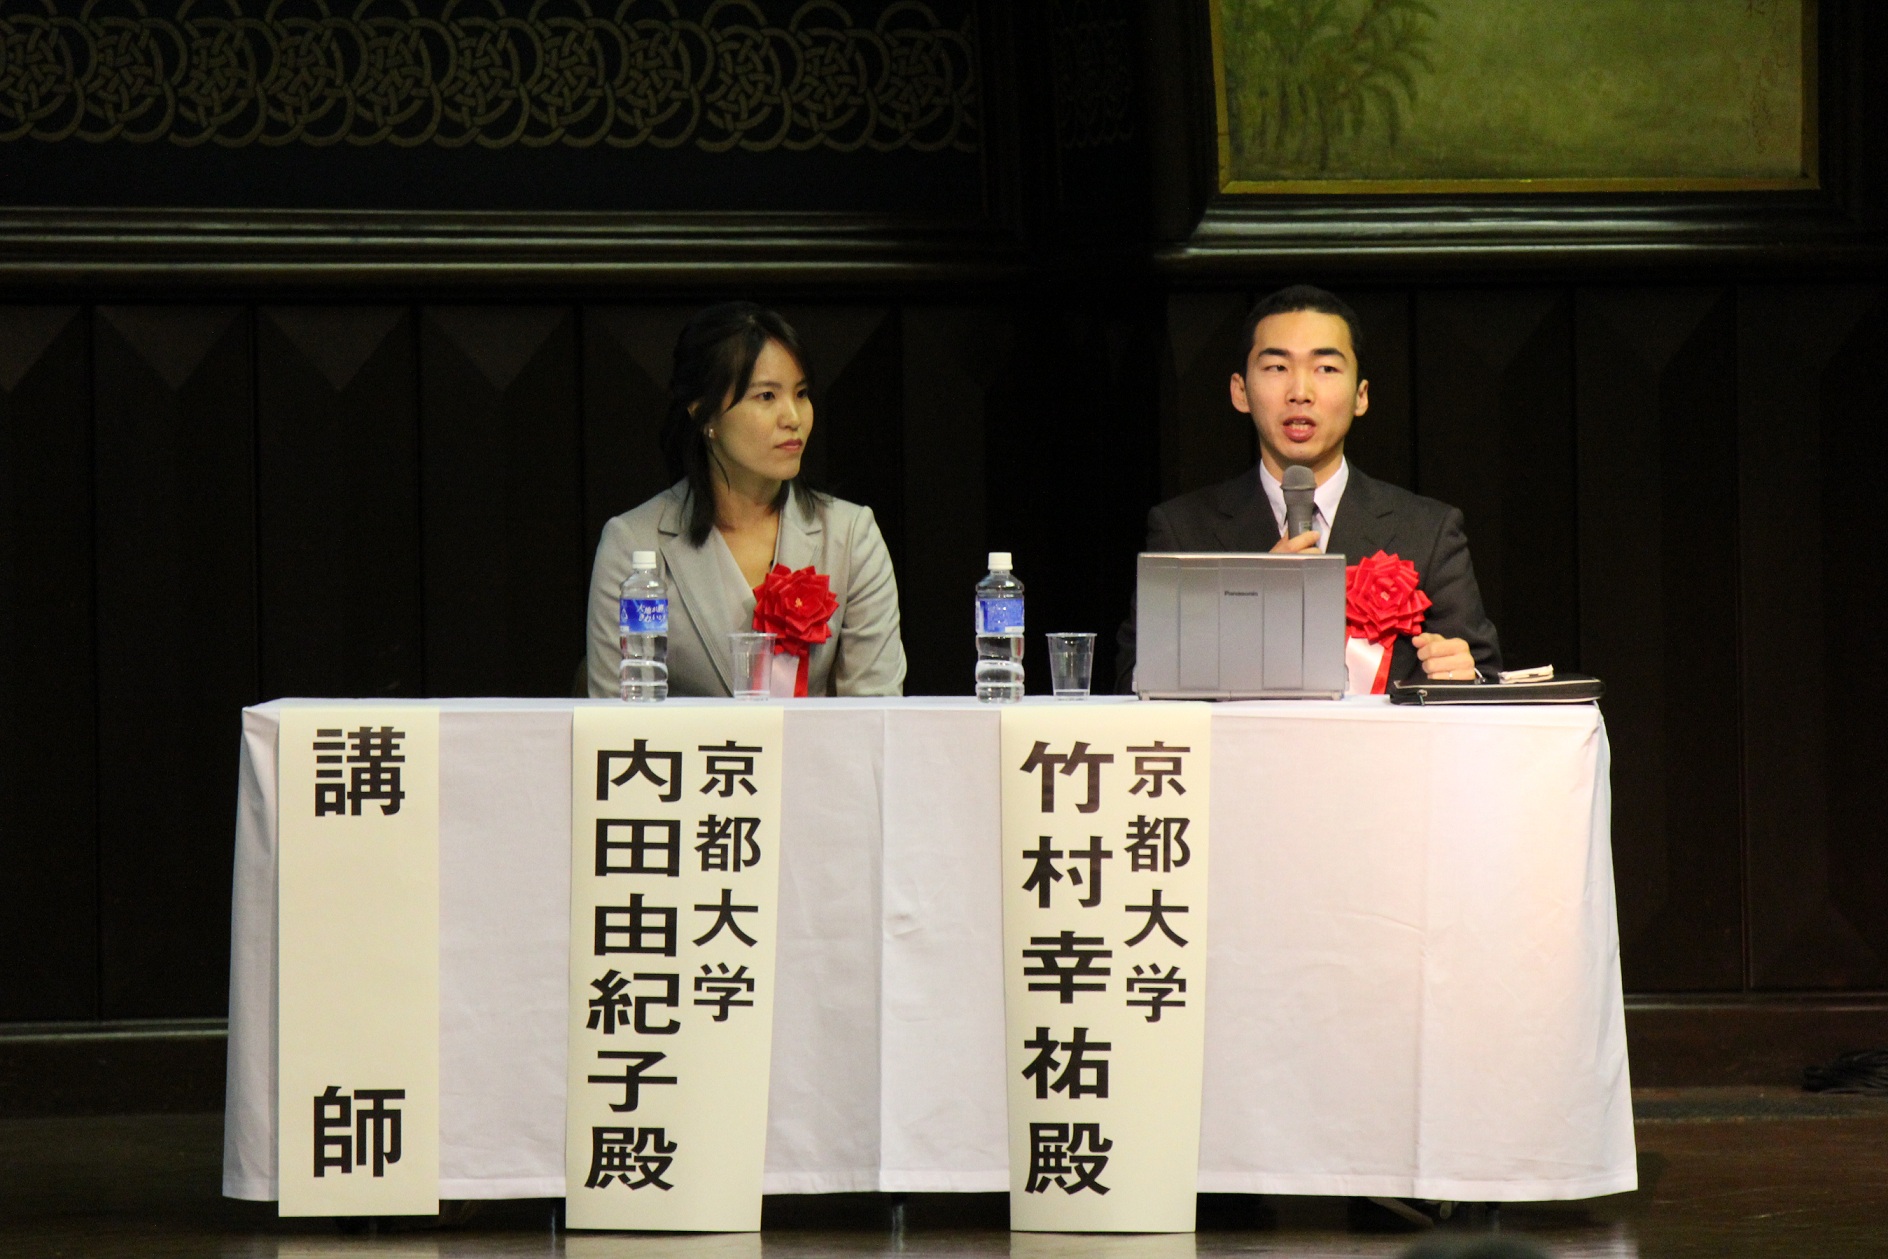 内田准教授・竹村連携研究員が「平成23年度全国普及活動研究大会」にて調査研究を発表しました。